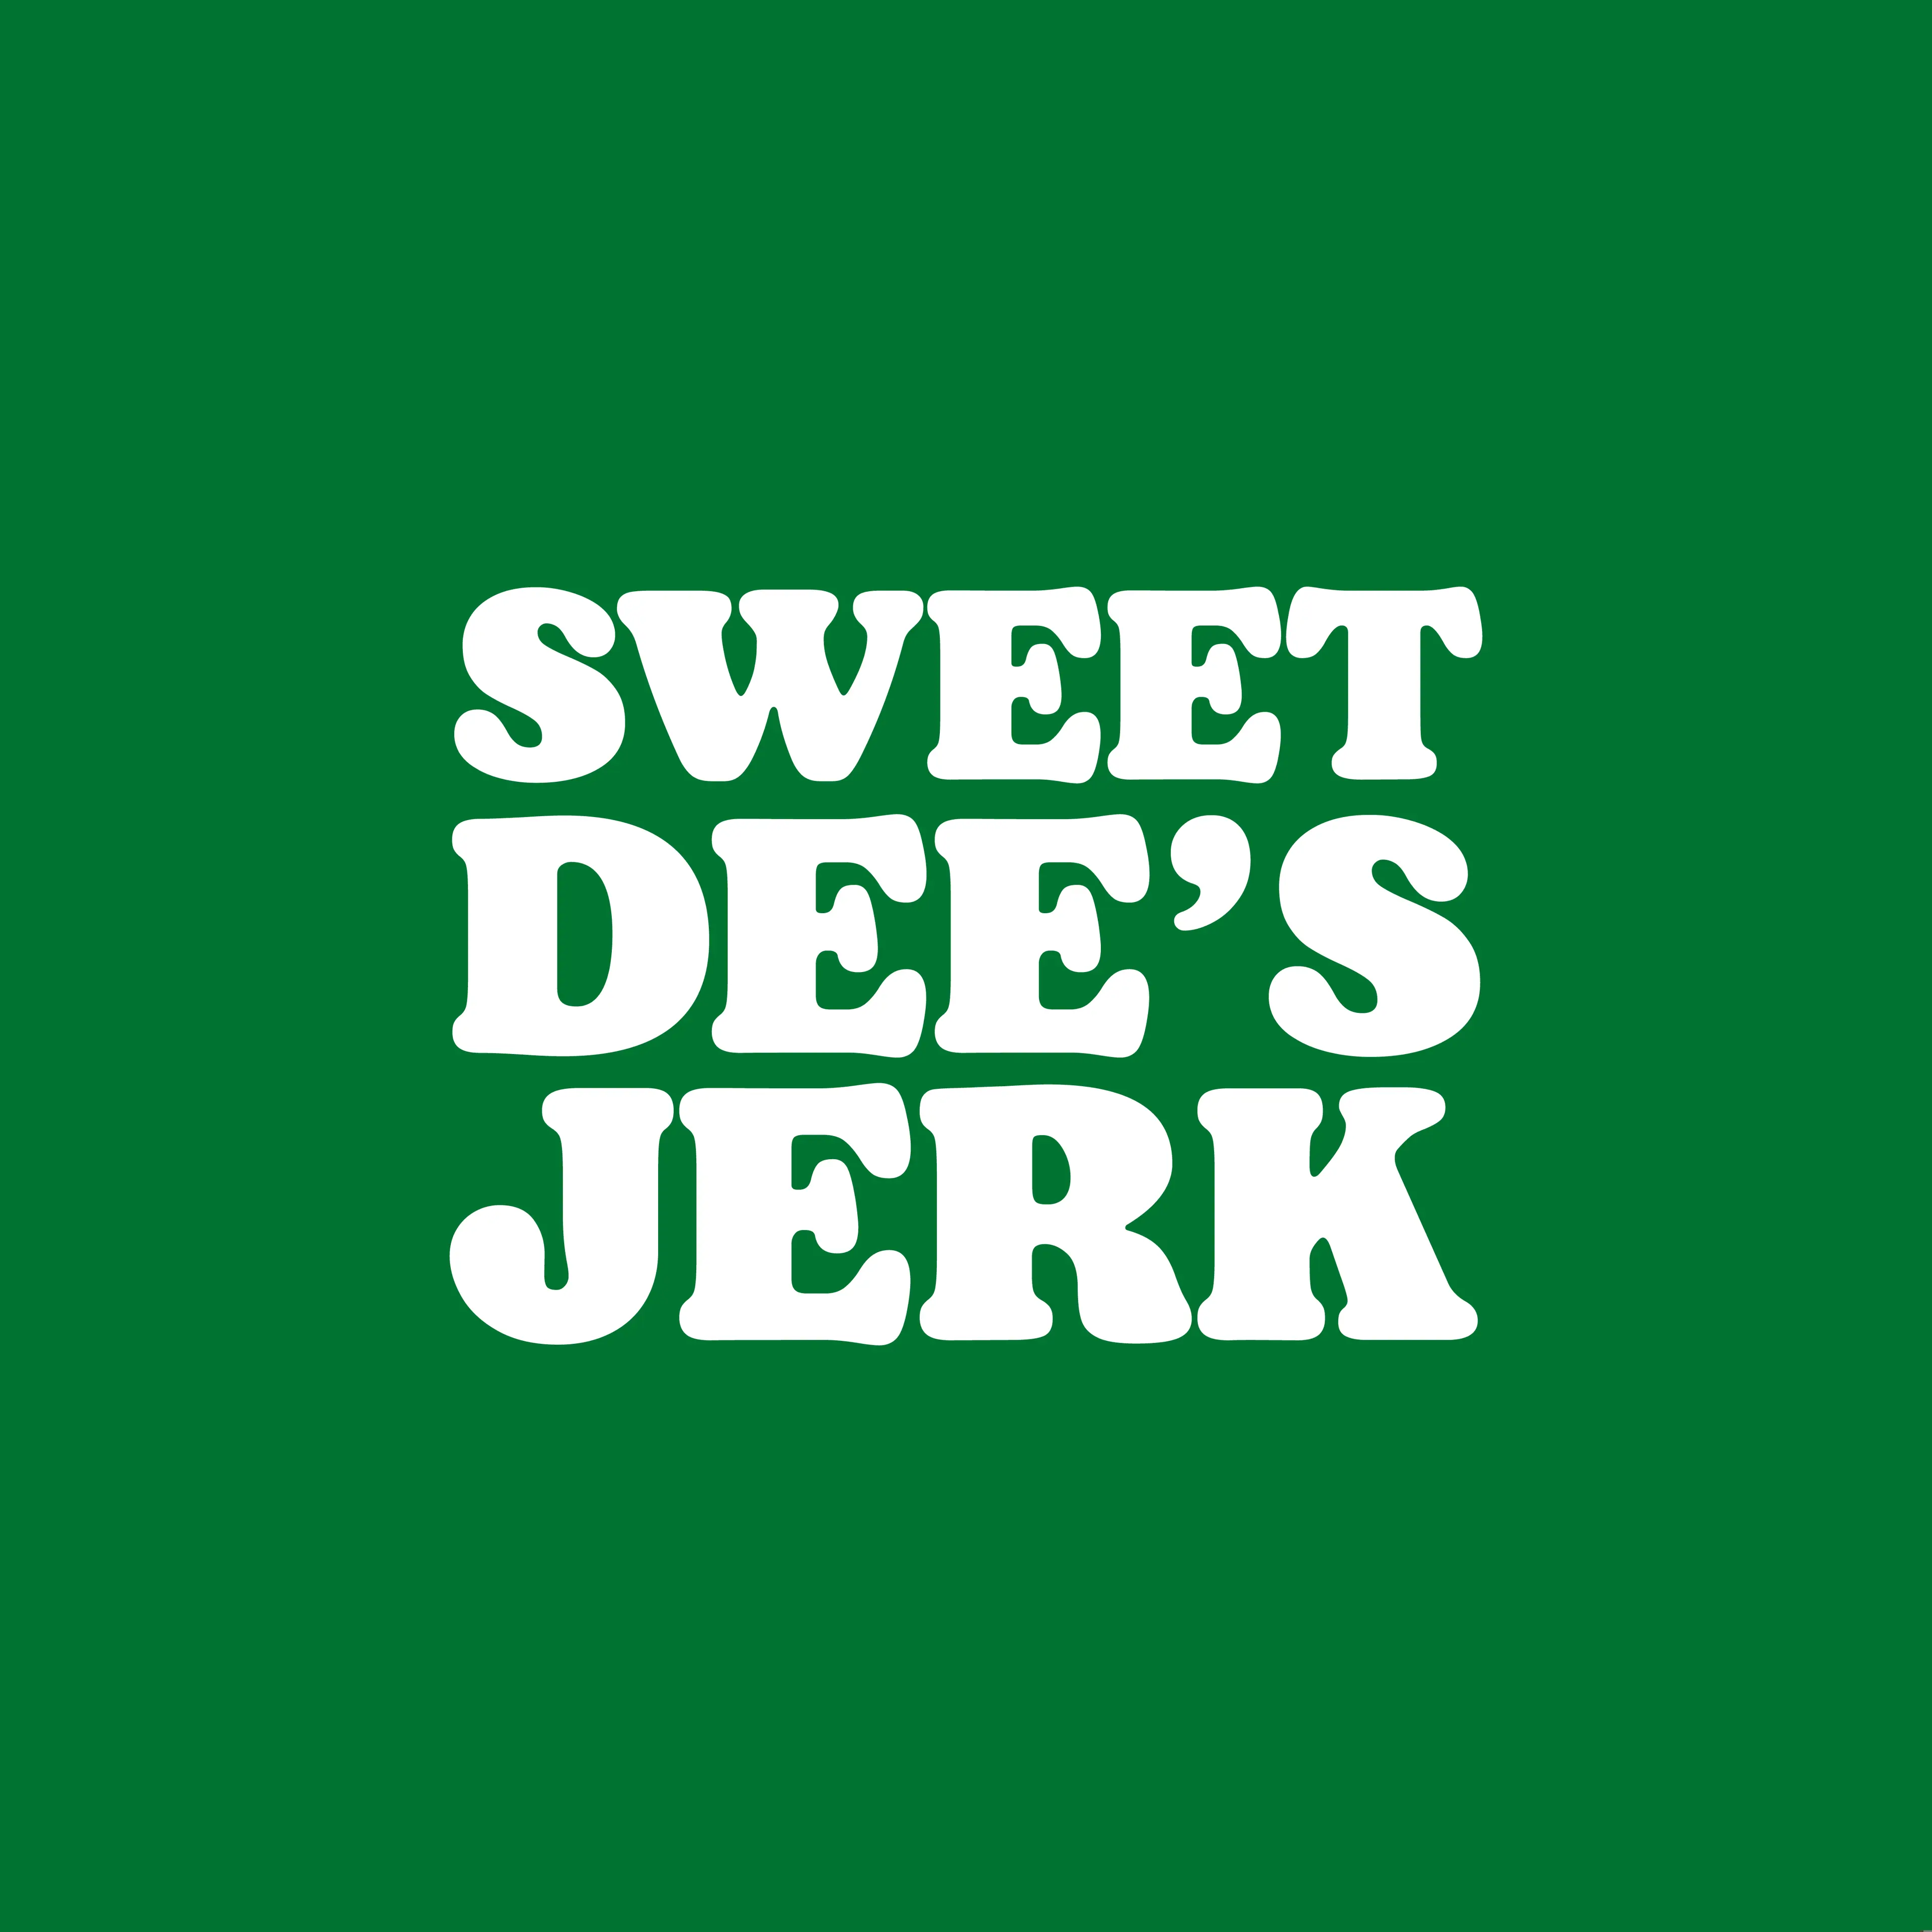 Sweet Dee's Jerk